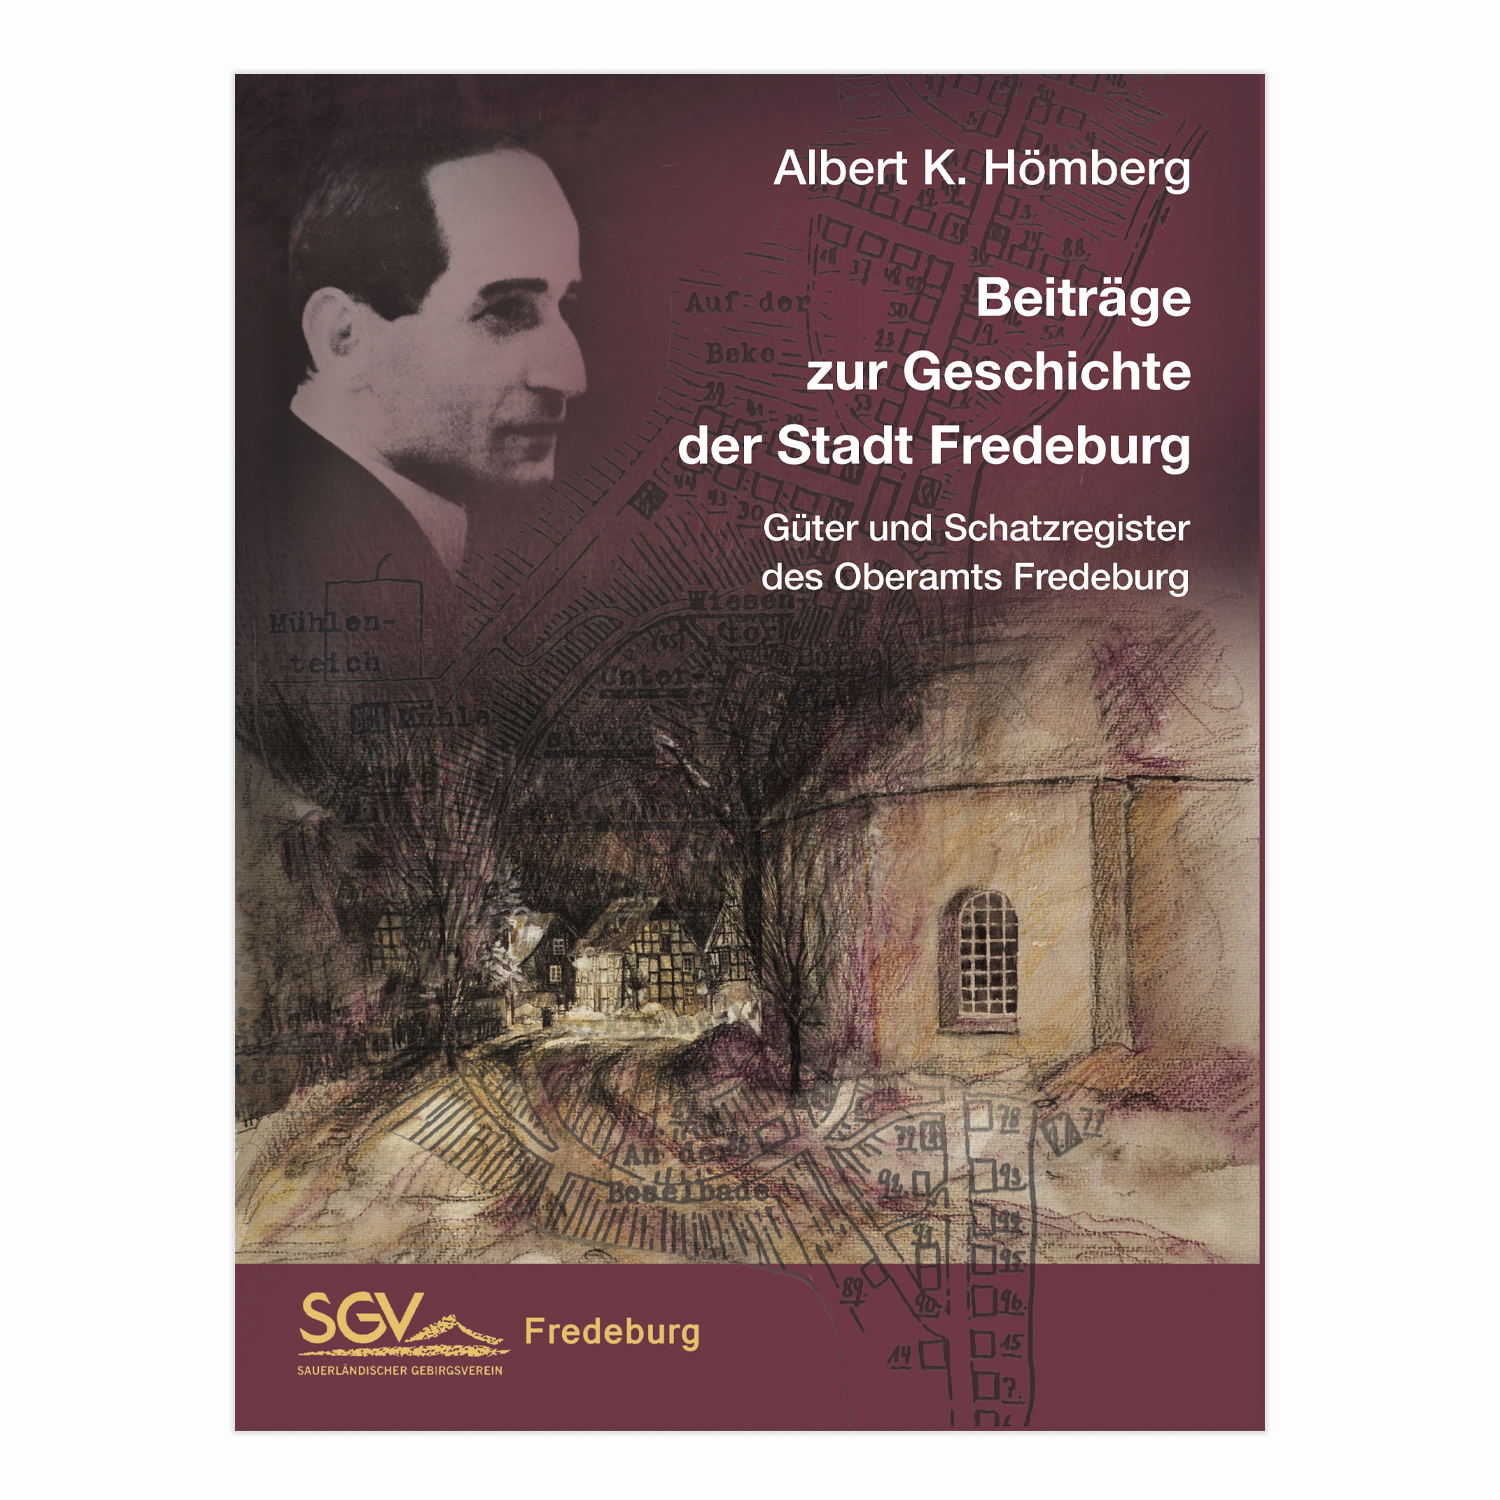 Beiträge zur Geschichte der Stadt Bad Fredeburg (Albert K. Hömberg)